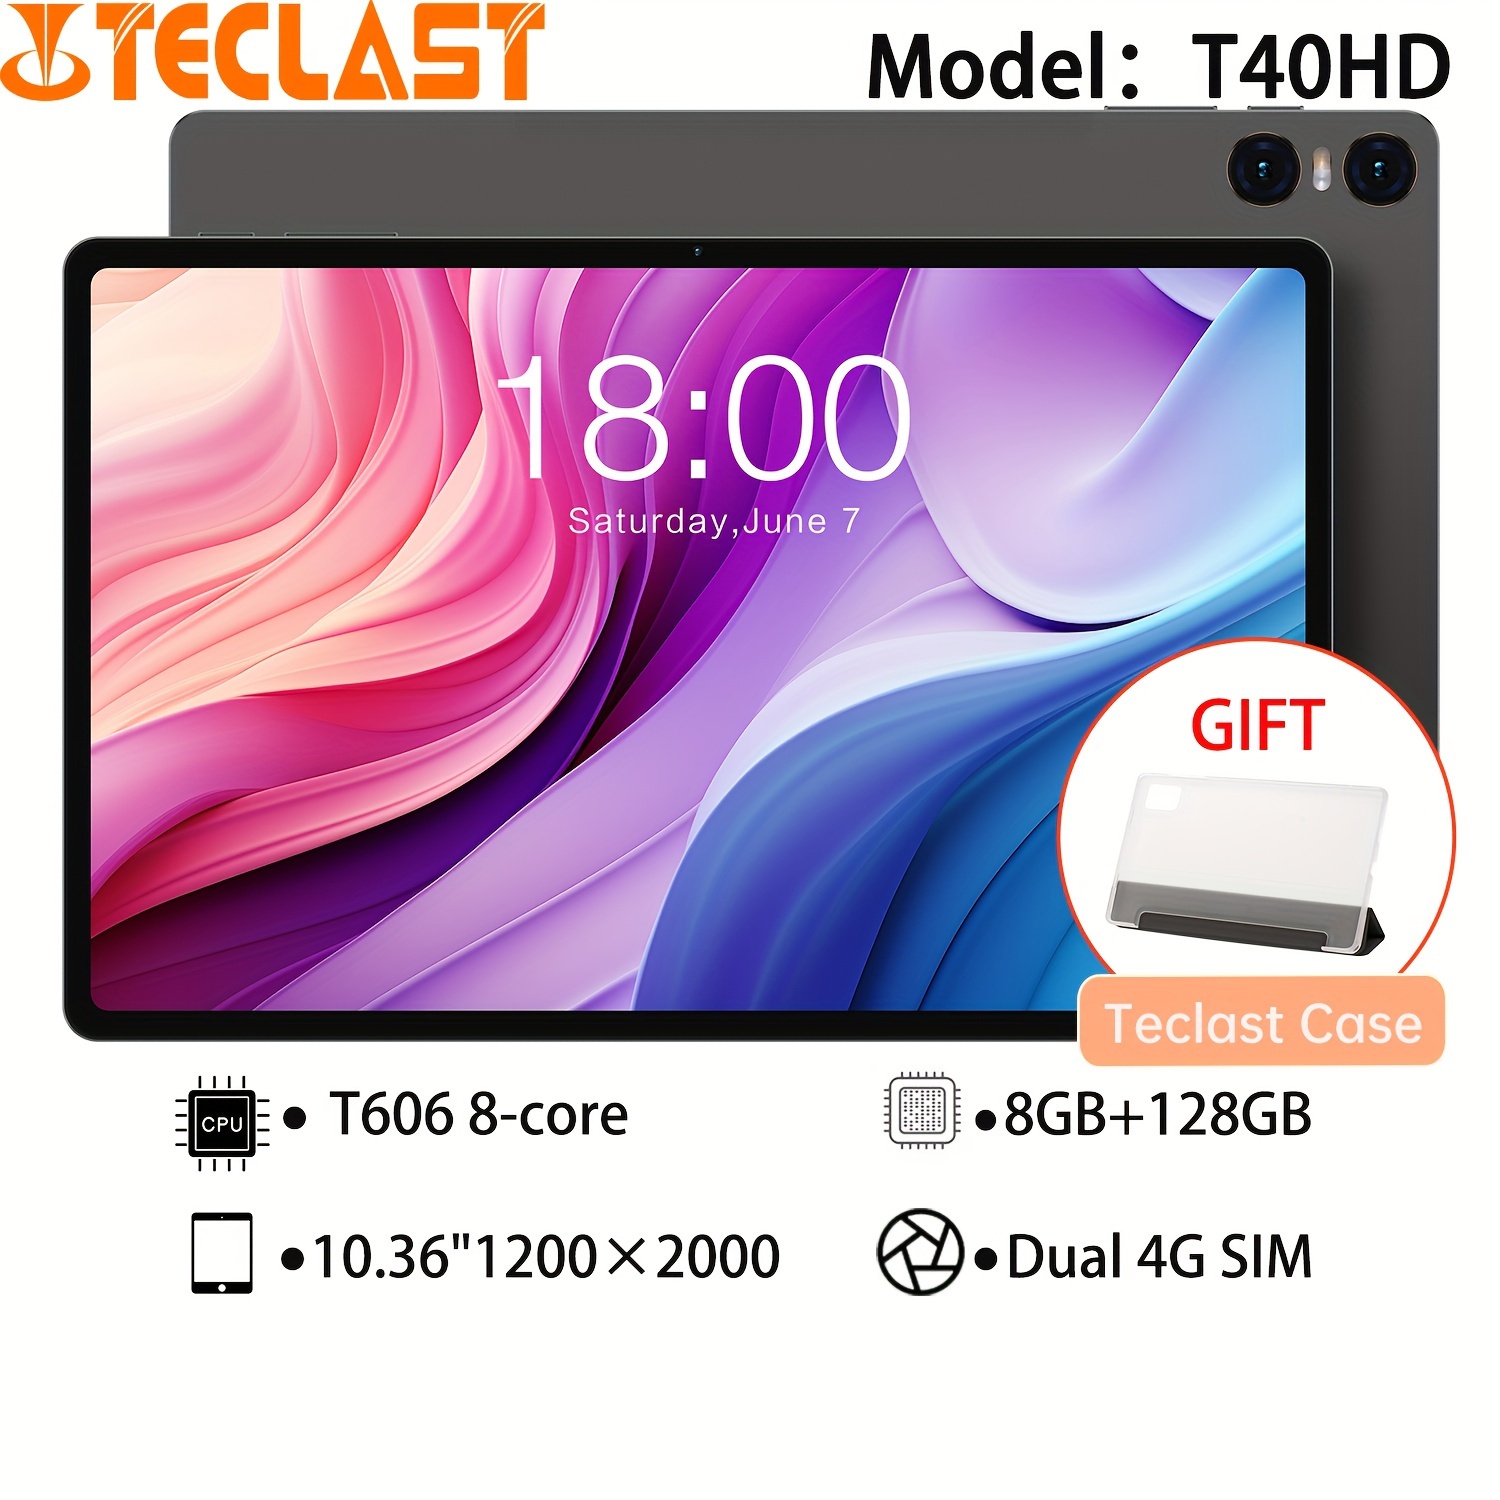 Tablet 11 Pulgadas Android 13 con 16GB RAM 256GB ROM(1TB Ampliable